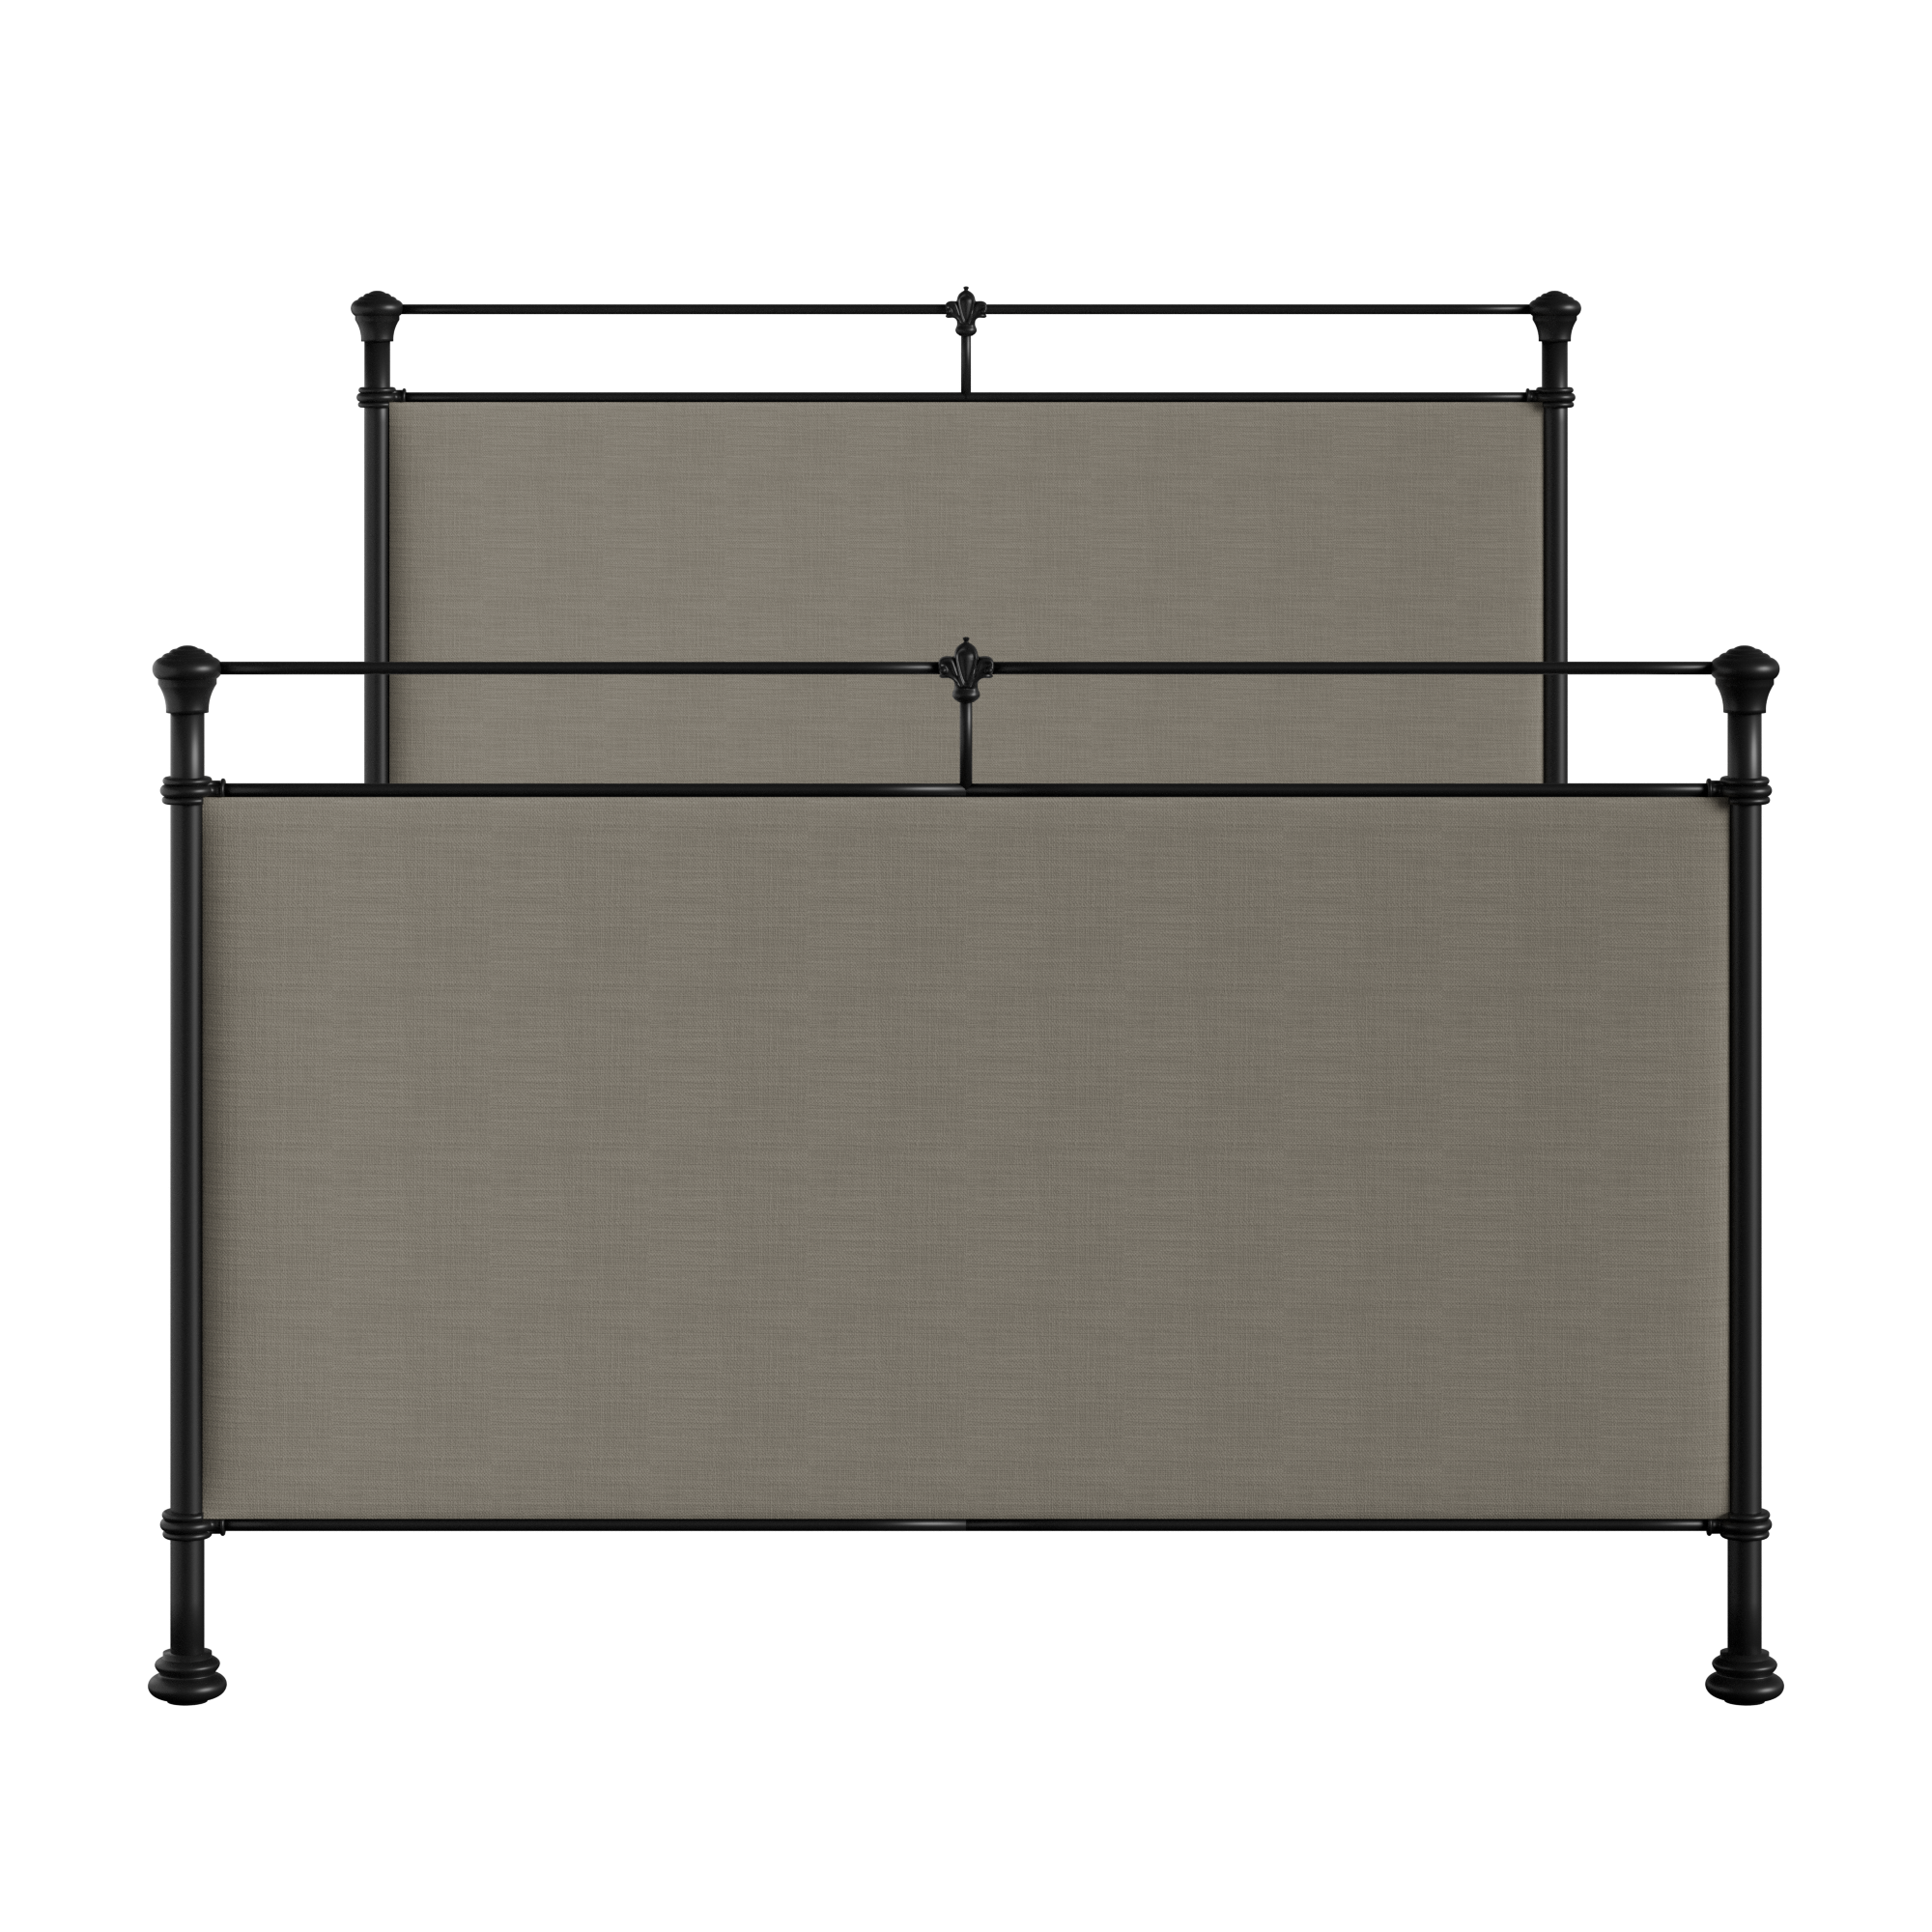 Lille metallbett in schwarz mit grey stoff